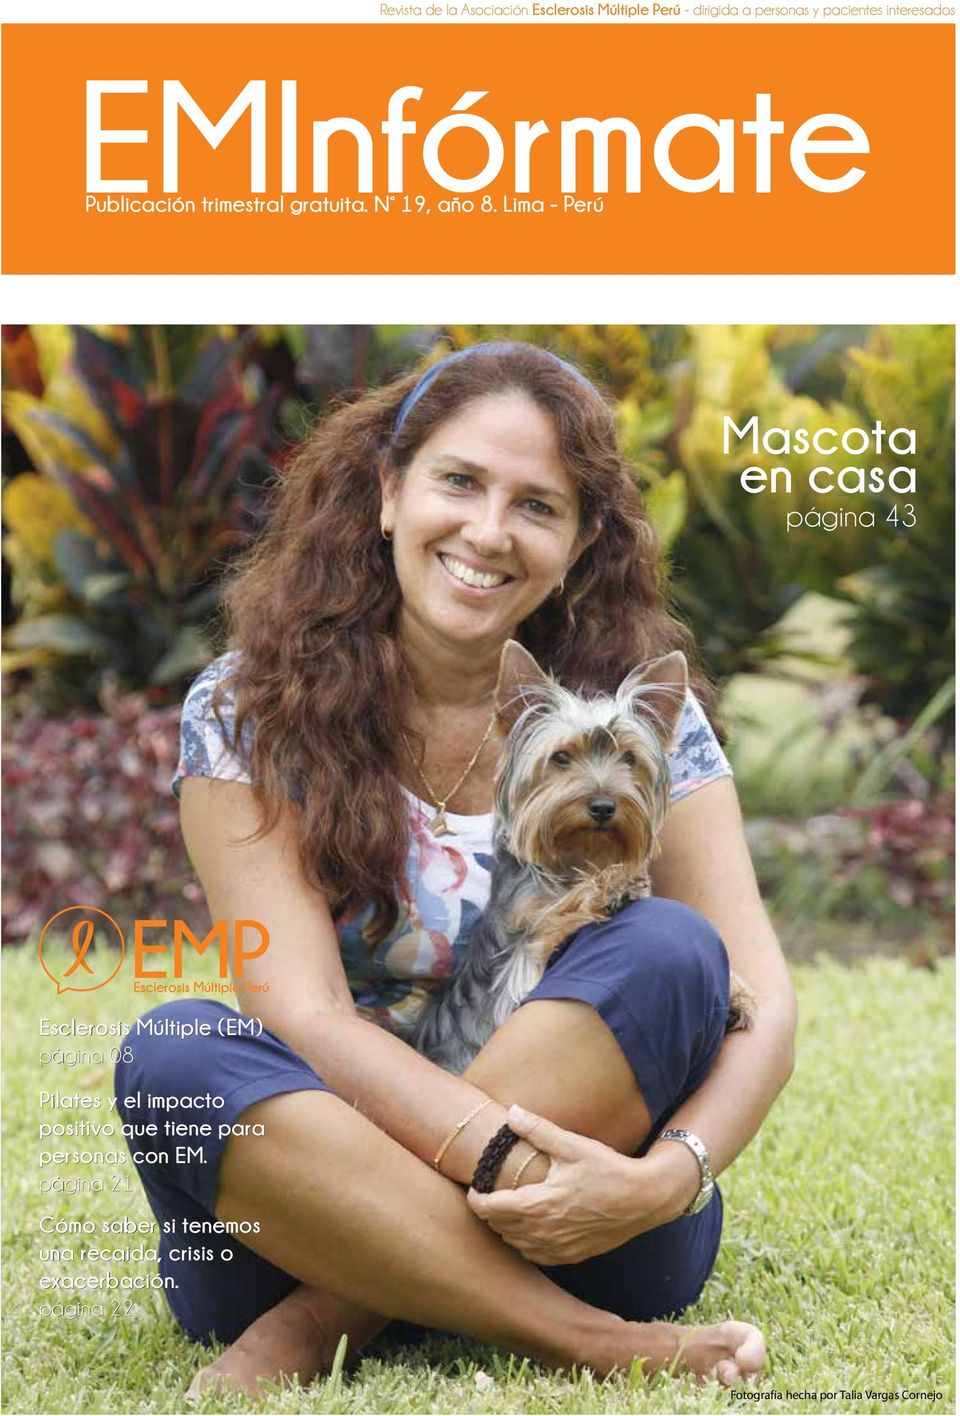 Lima - Perú Mascota en casa página 43 Esclerosis Múltiple (EM) página 08 Pilates y el impacto